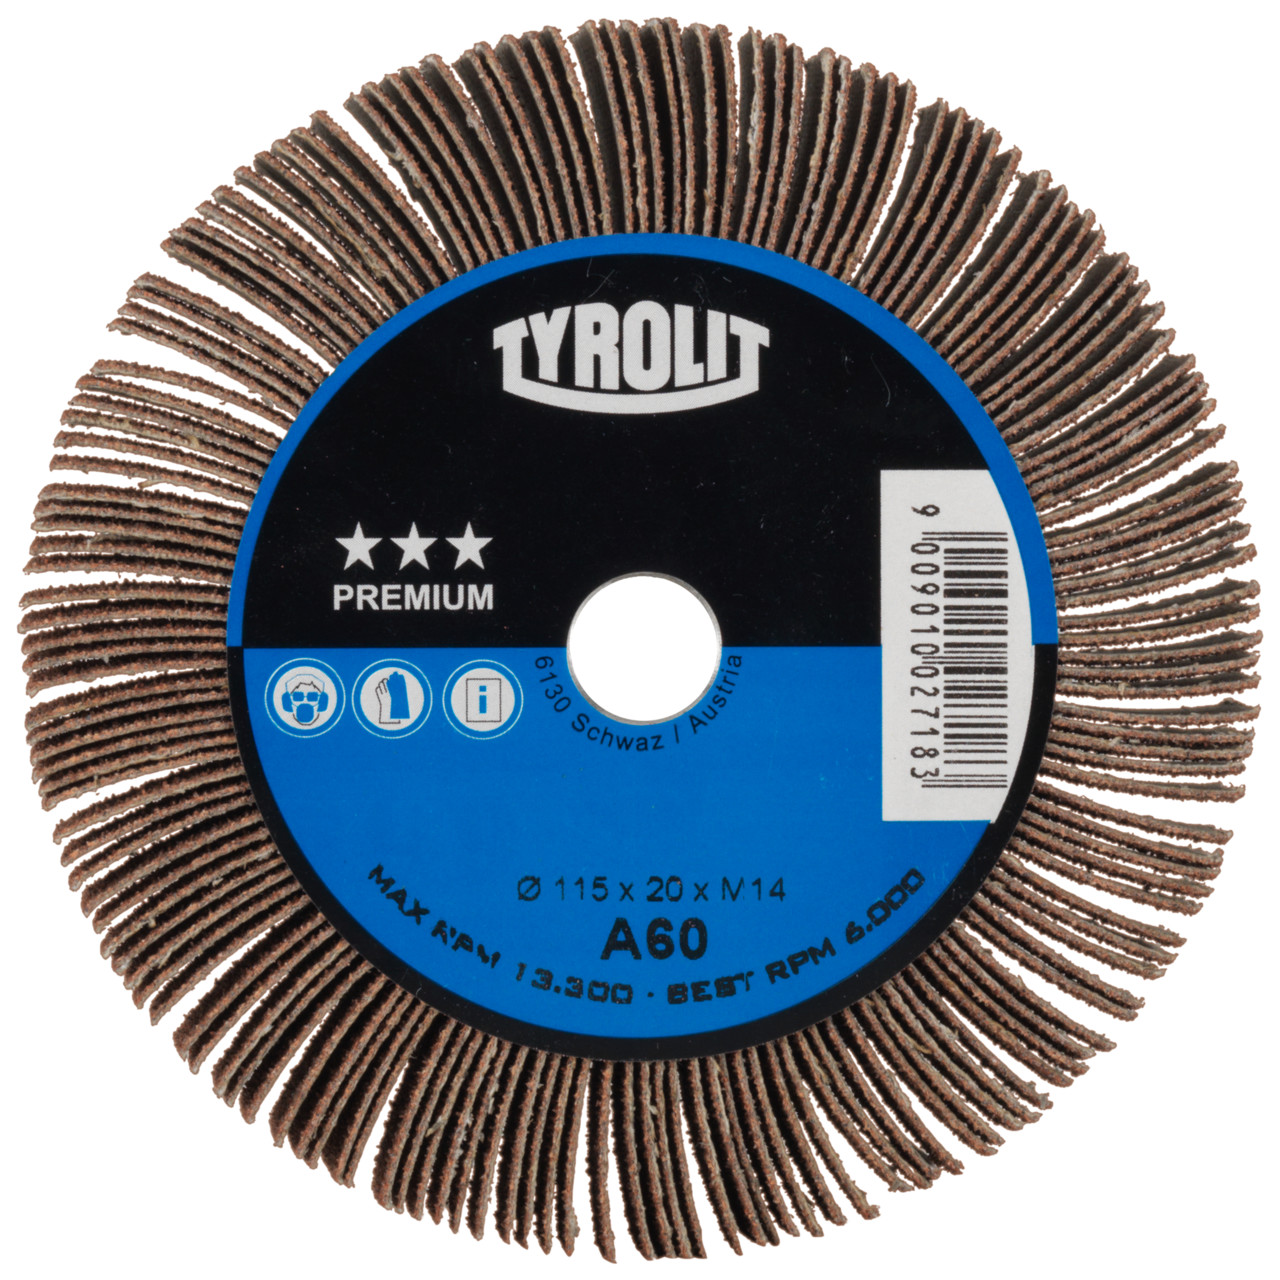 Tyrolit A-P01 C X Ruedas de abanico DxD 115x20 Para acero, metal no férreo y madera, P40, forma: 1LA - (rueda de abanico), Art. 34053198